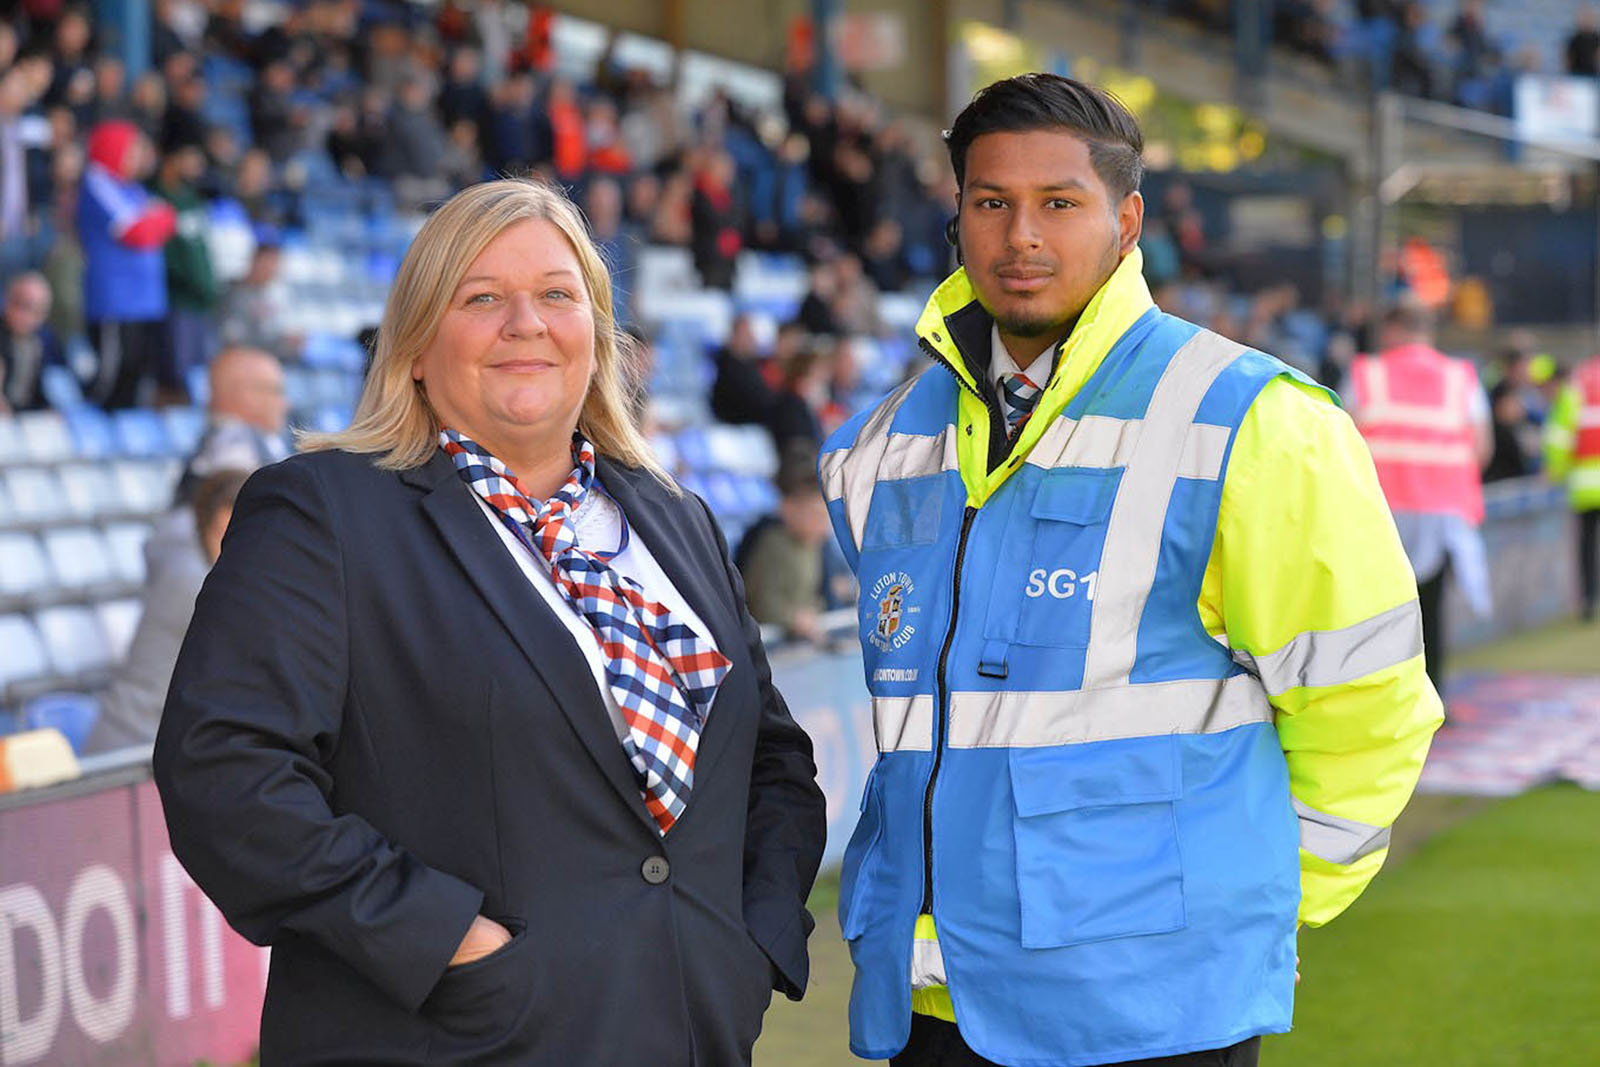 Match day steward Kibriya Rahim (right). Photo by Gareth Owen, courtesy of Luton Town Football Club